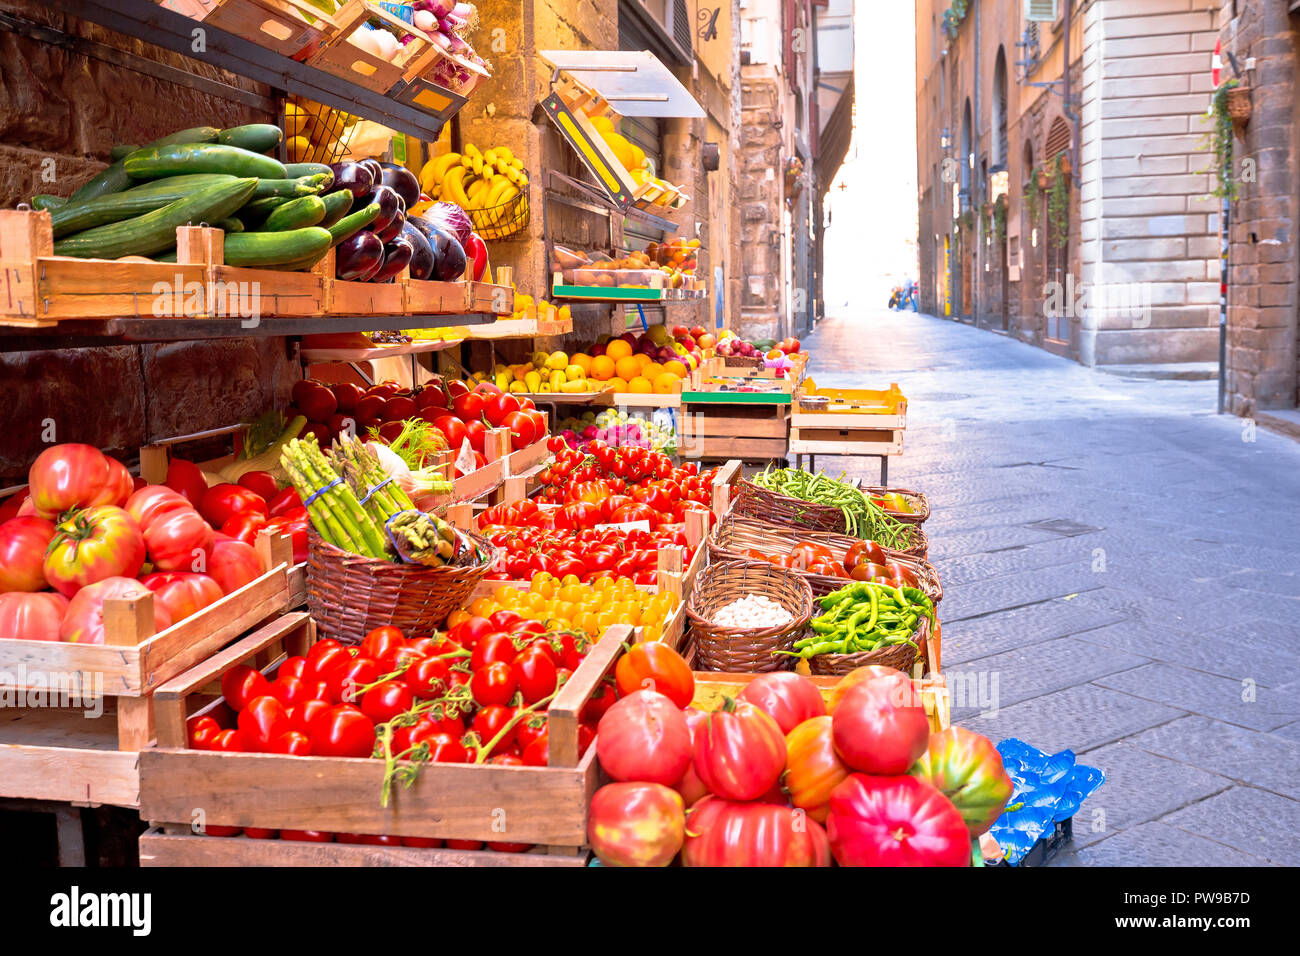 Mercato di frutta e verdura in stretta strada di Firenze, Regione Toscana Italia Foto Stock